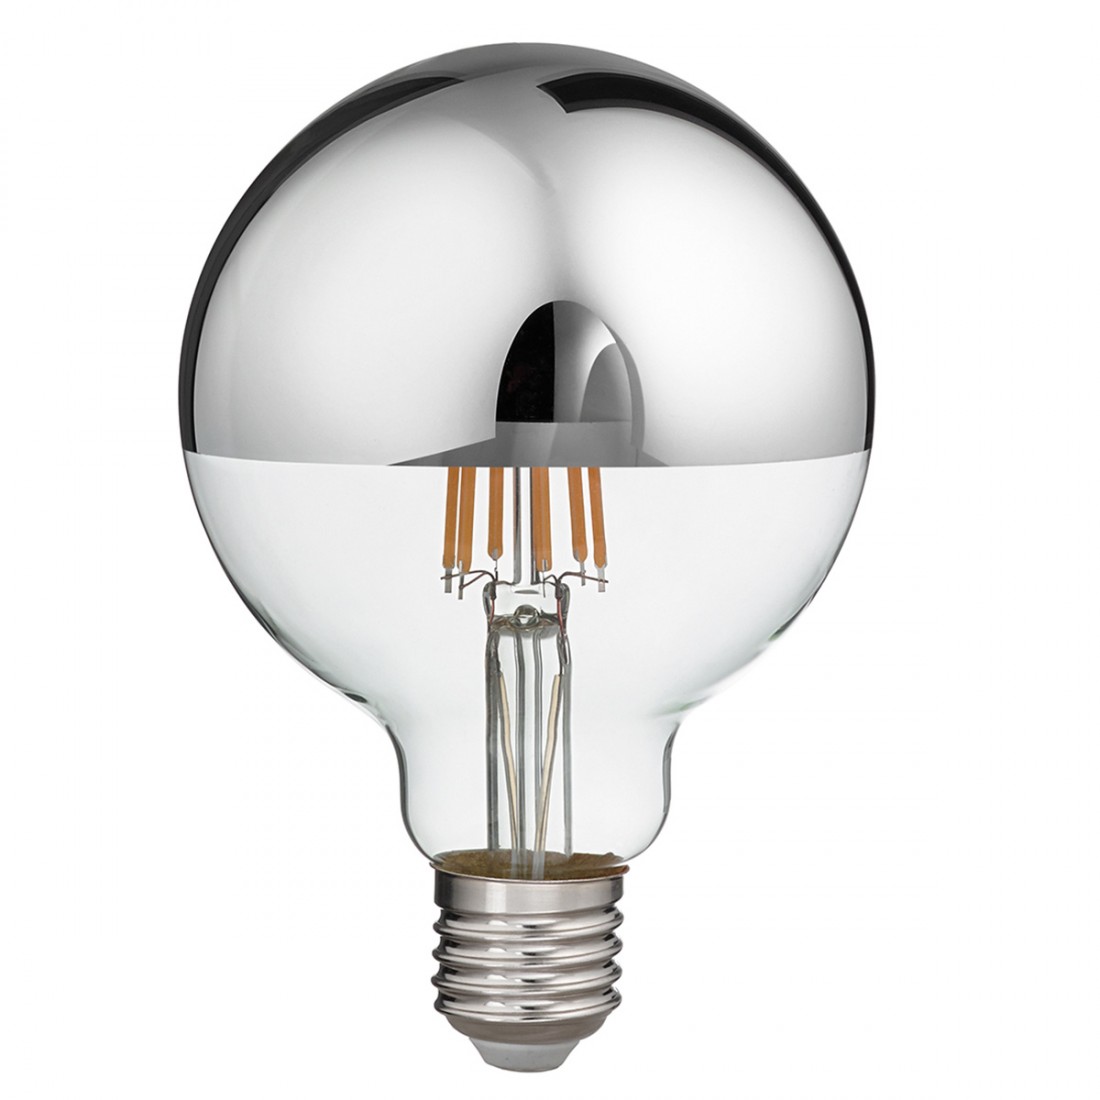 https://www.lampadaribartalini.it/77150-large_default/gea-led-led-lampe-gla302a-e27-led-12w-1521lm-glaskuppel-silberkugel-warmes-licht-innen.jpg